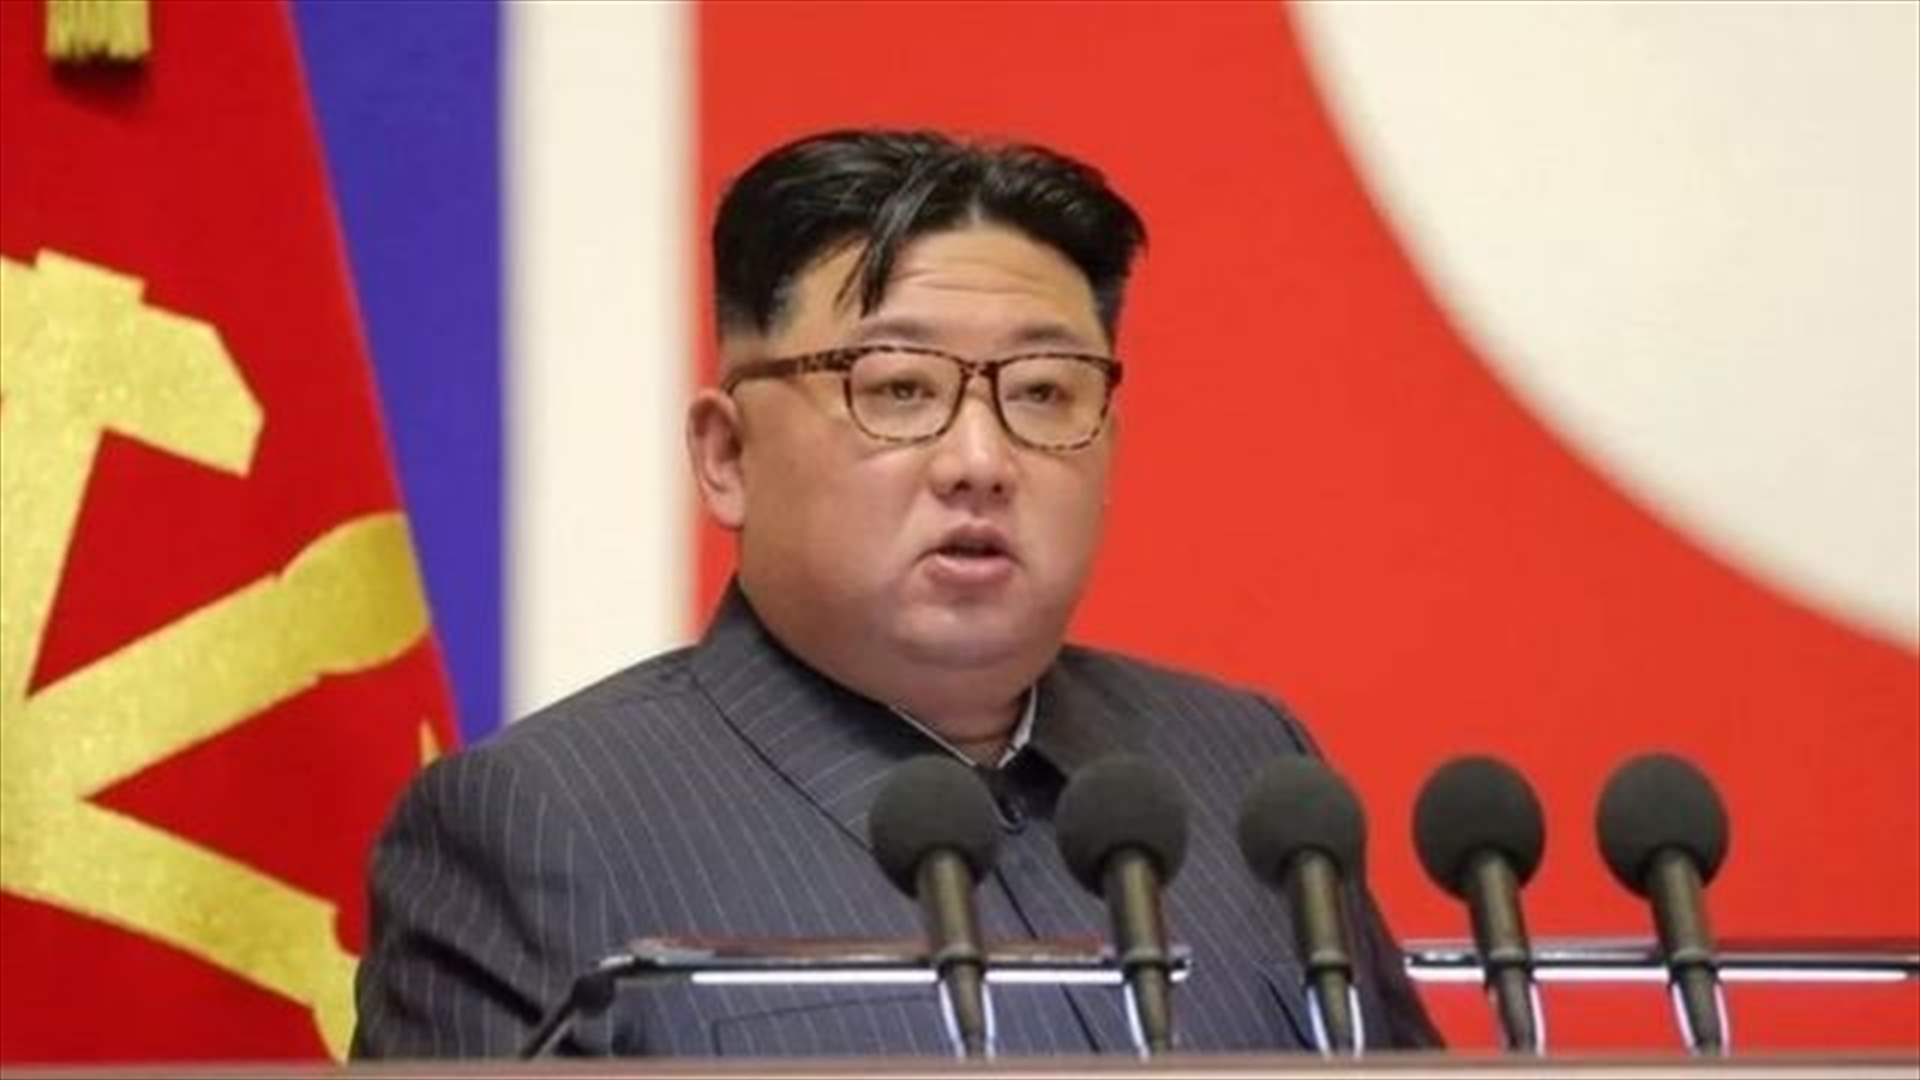 زعيم كوريا الشمالية يحض مسؤوليه على تعزيز إنتاج المواد النووية المخصصة لأغراض عسكرية